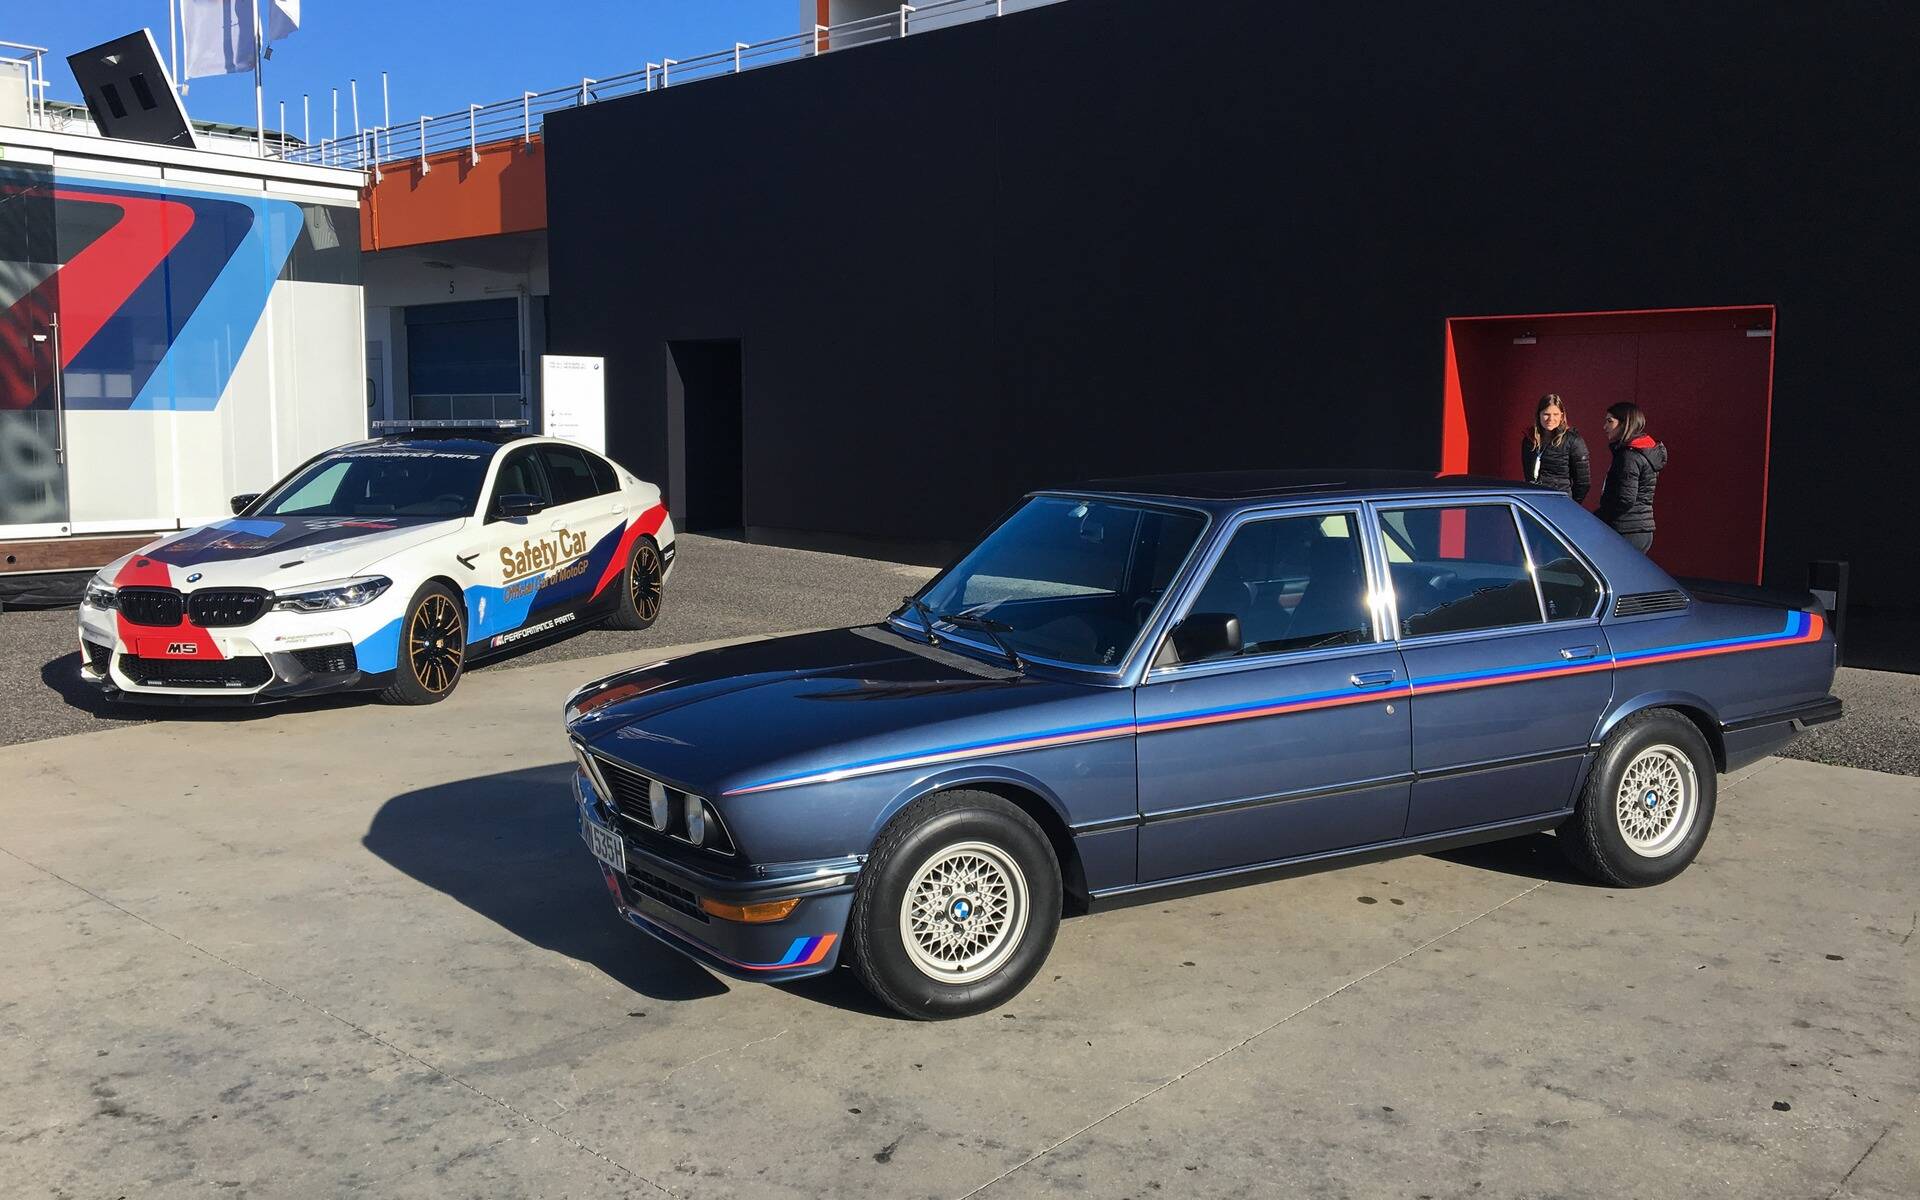 50 ans de voitures BMW M en images 527893-50-ans-de-voitures-bmw-m-en-images